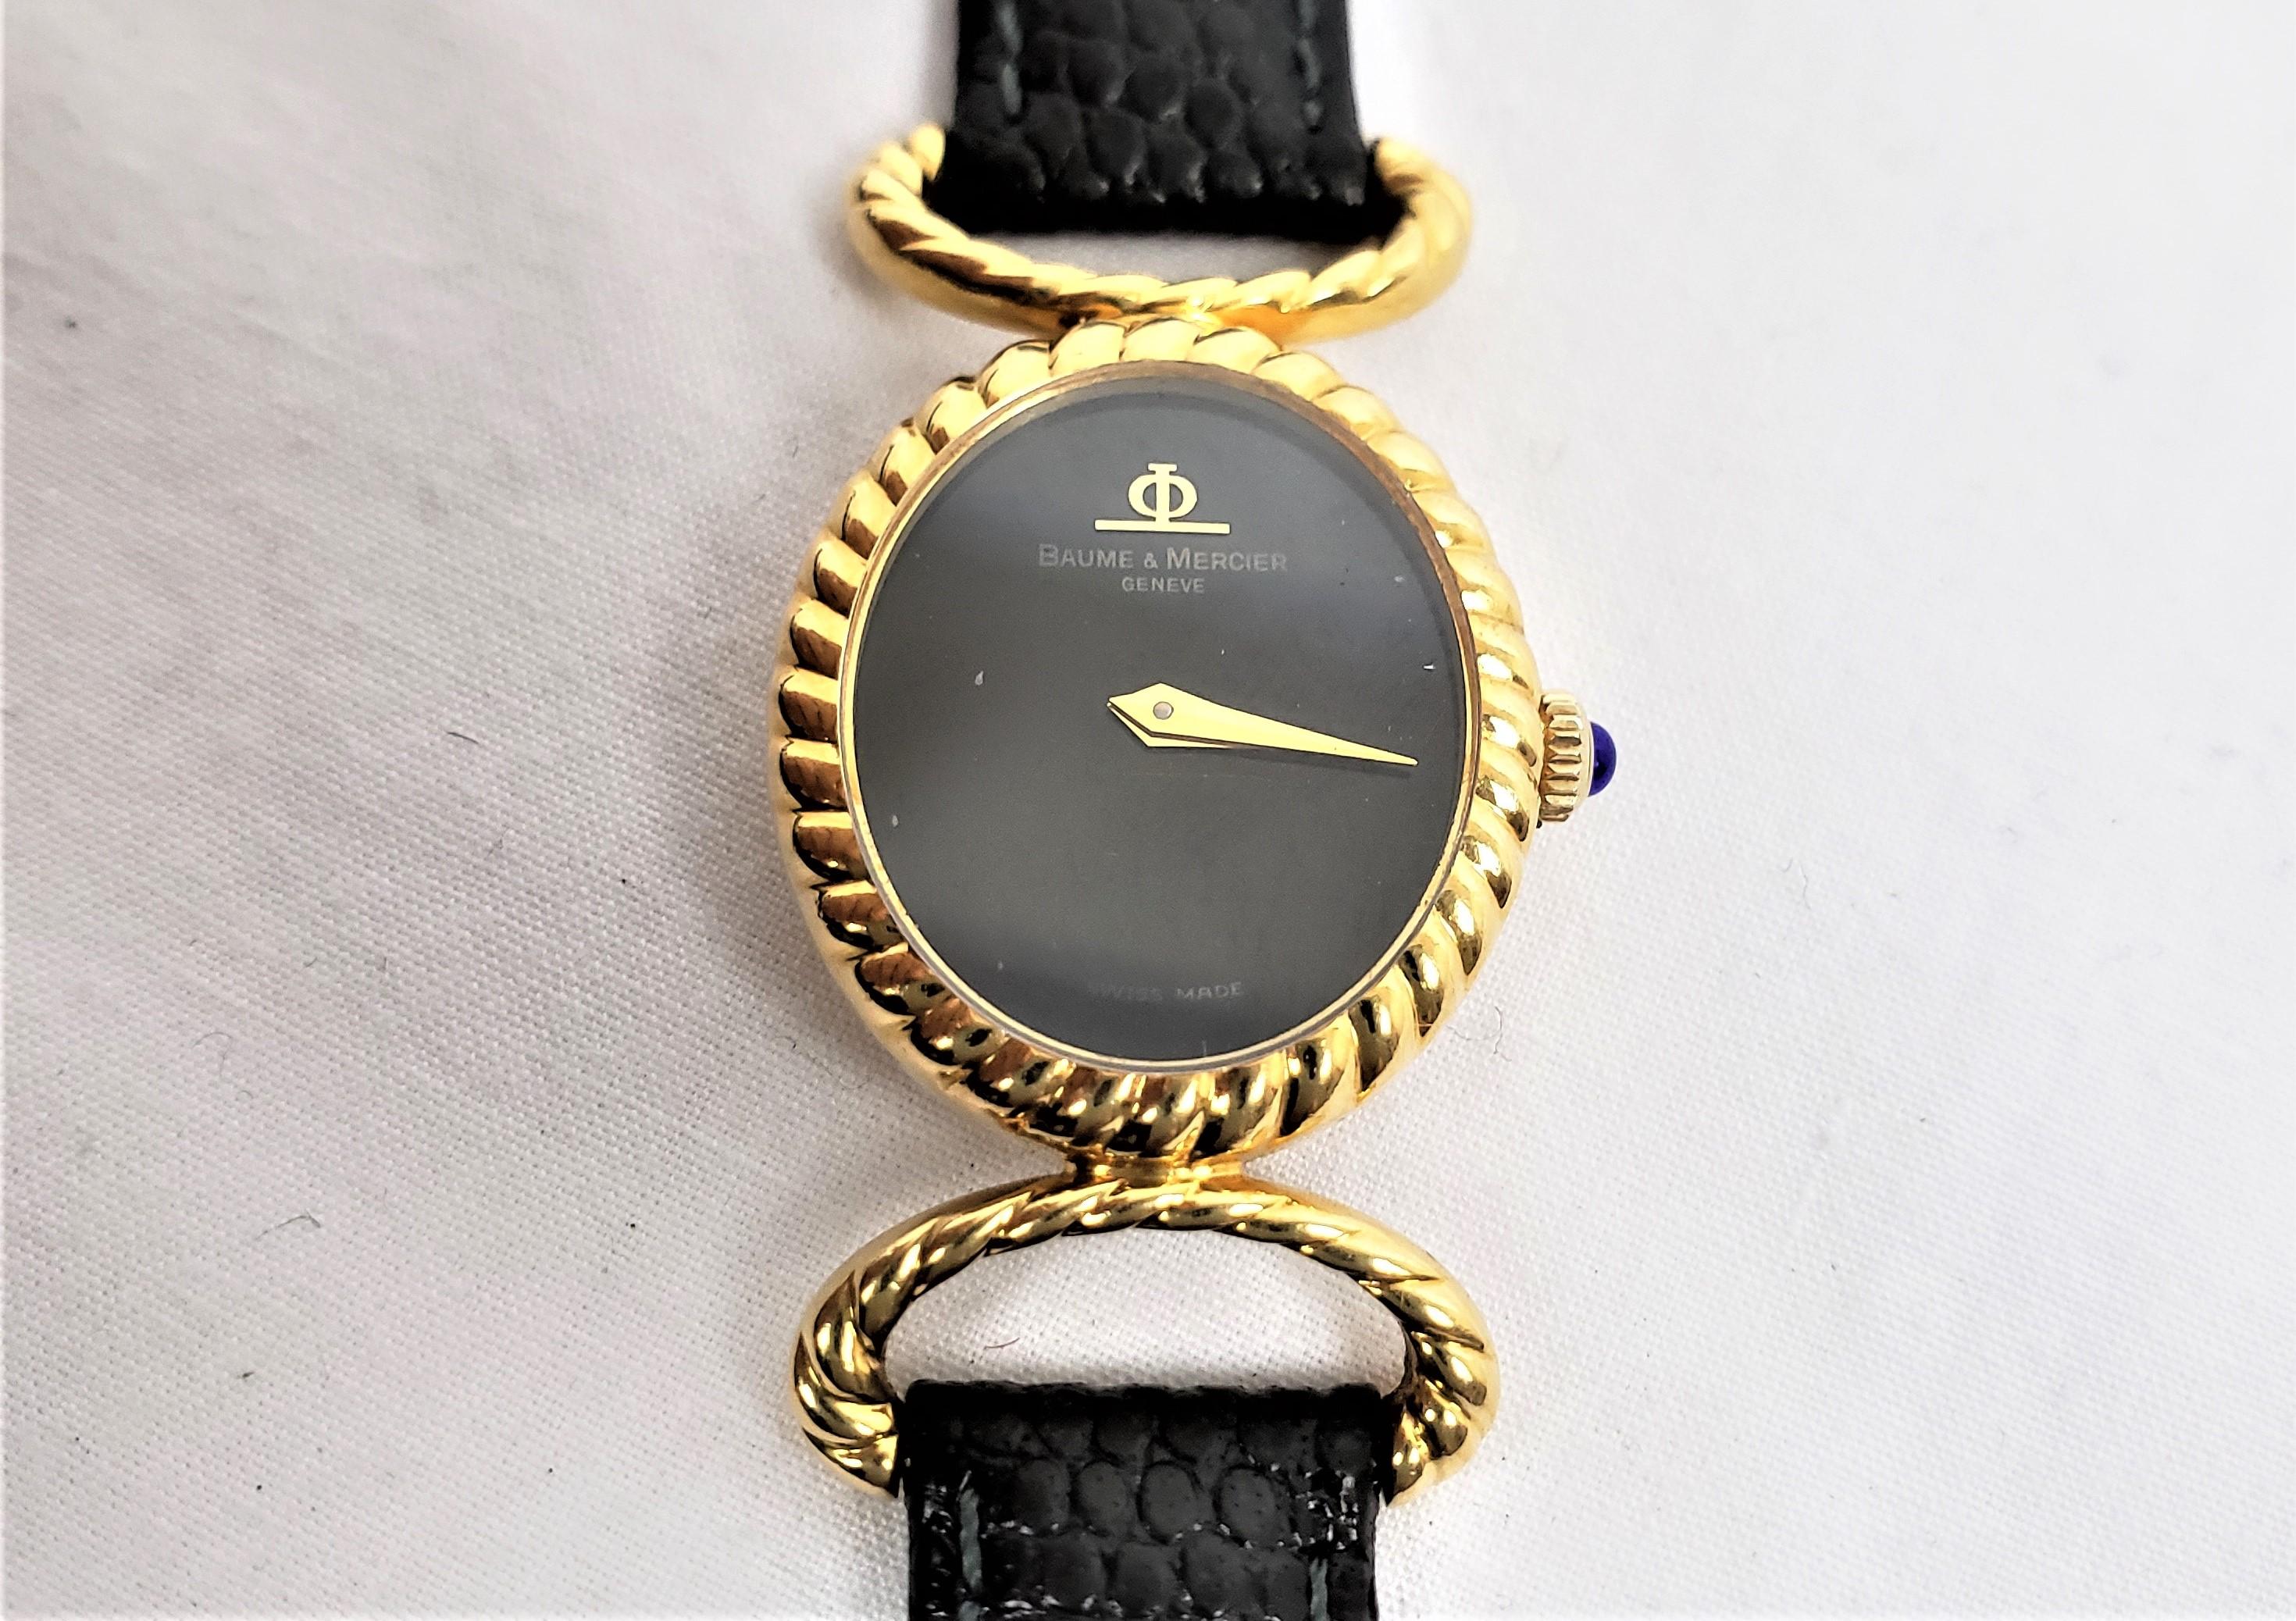 Diese Damenarmbanduhr wurde von der bekannten Baume et Mercier aus der Schweiz um 1970 im Stil der Jahrhundertmitte hergestellt. Die Uhr und die Bandanstöße sind aus achtzehn Karat Gelbgold gefertigt. Das Zifferblatt ist schwarz und mit goldenen